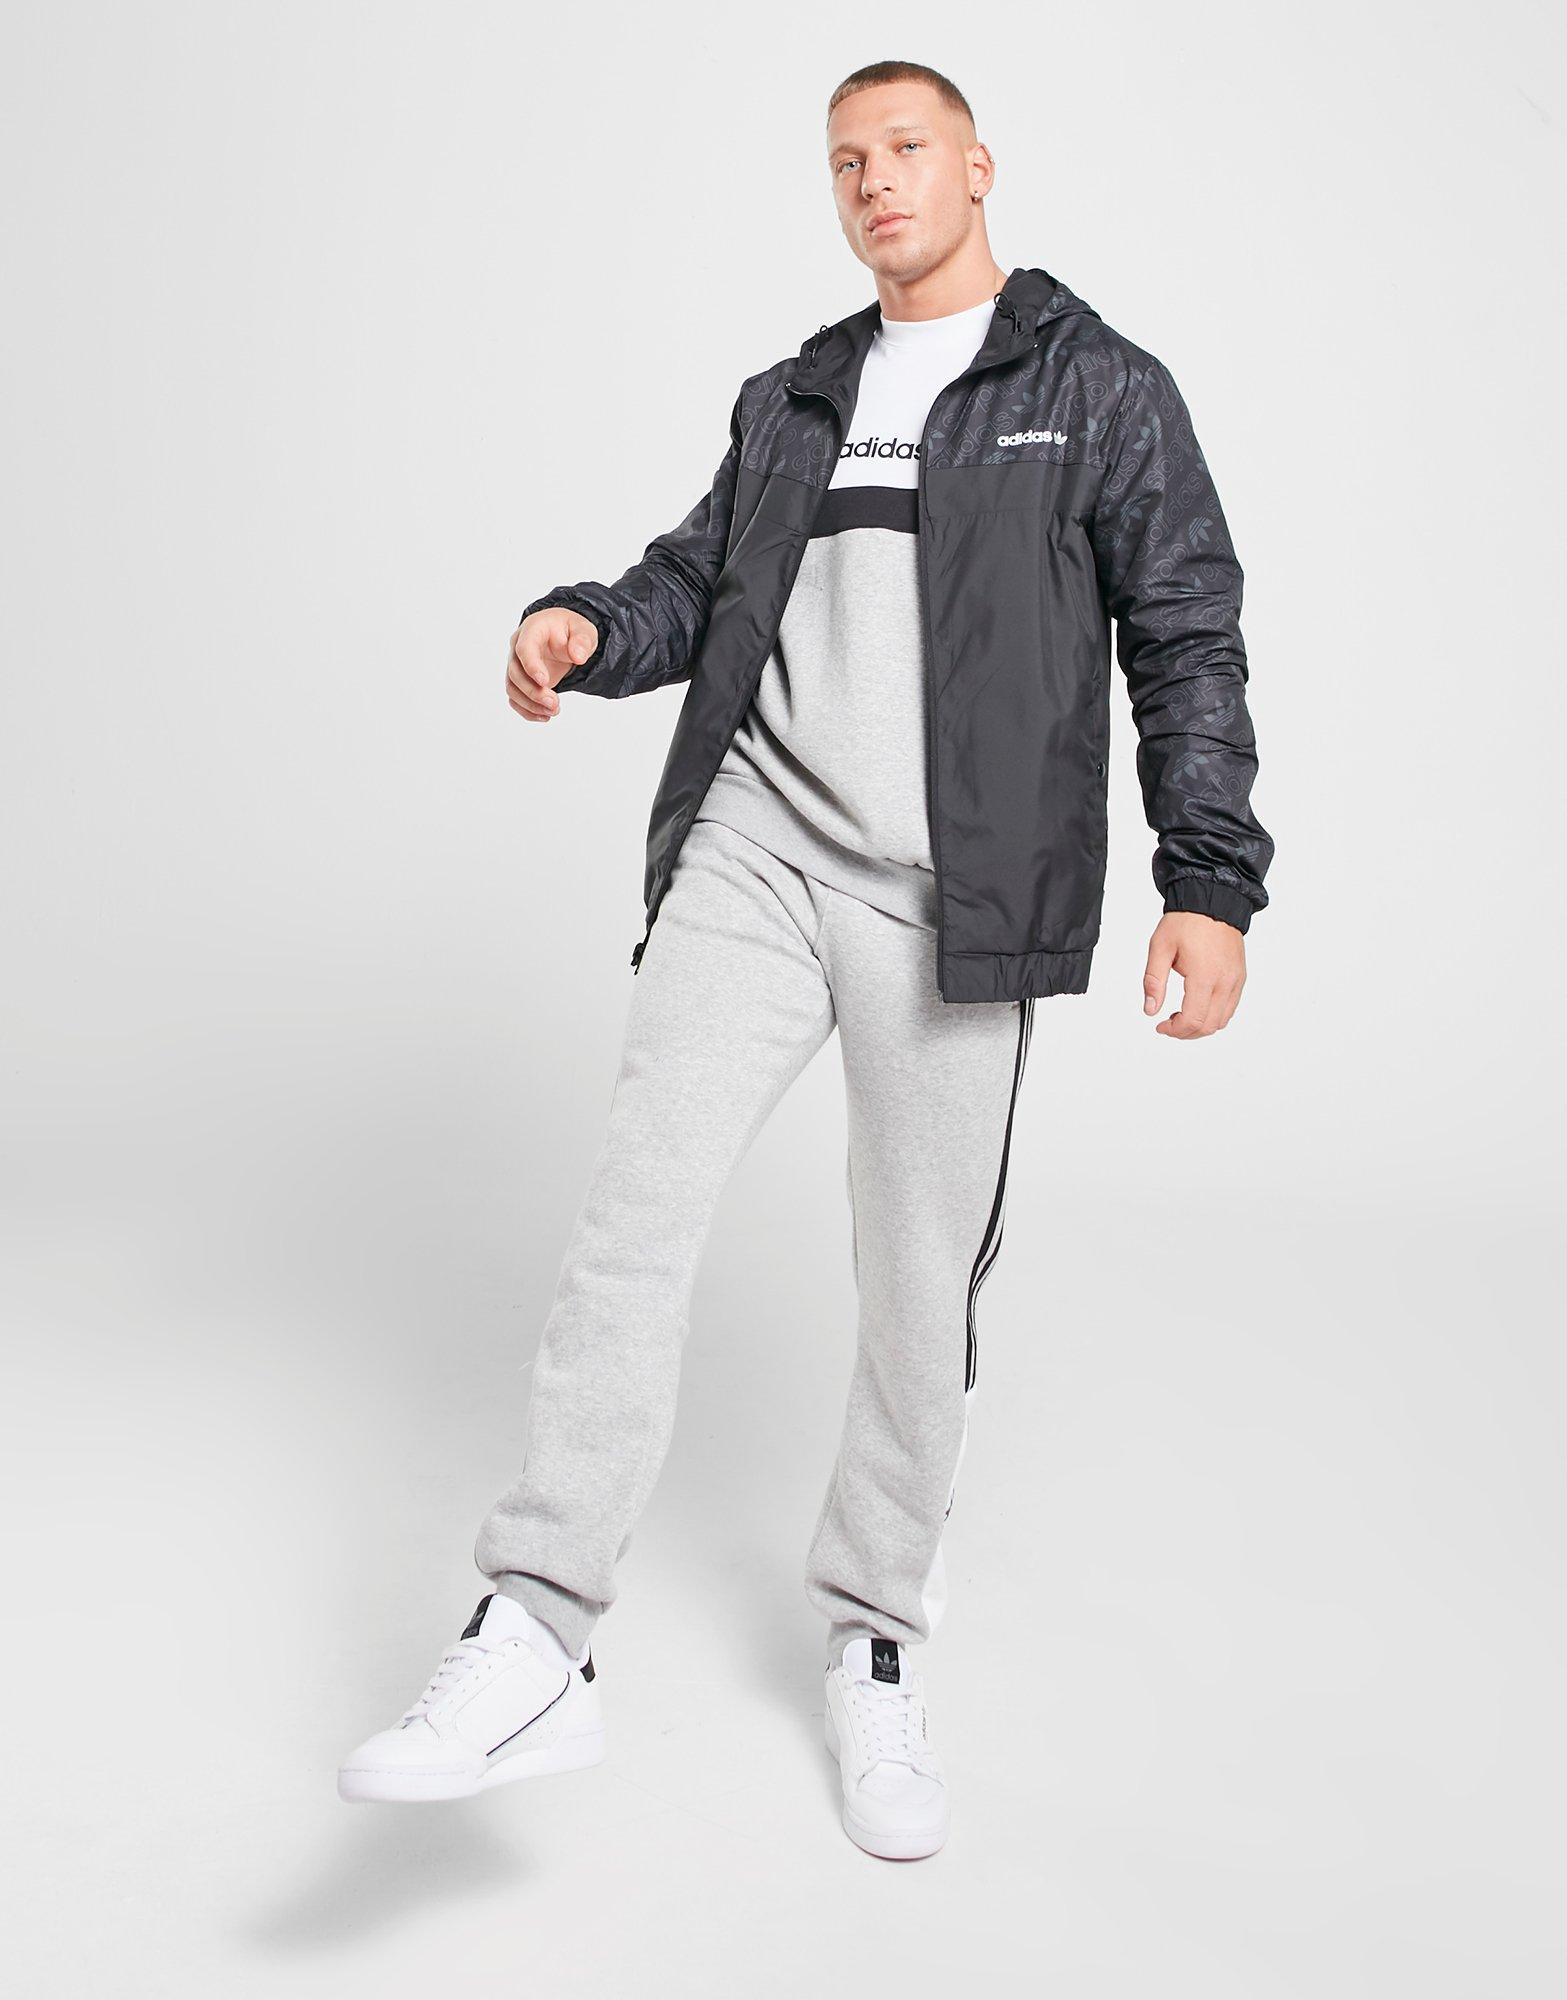 adidas zx jacket